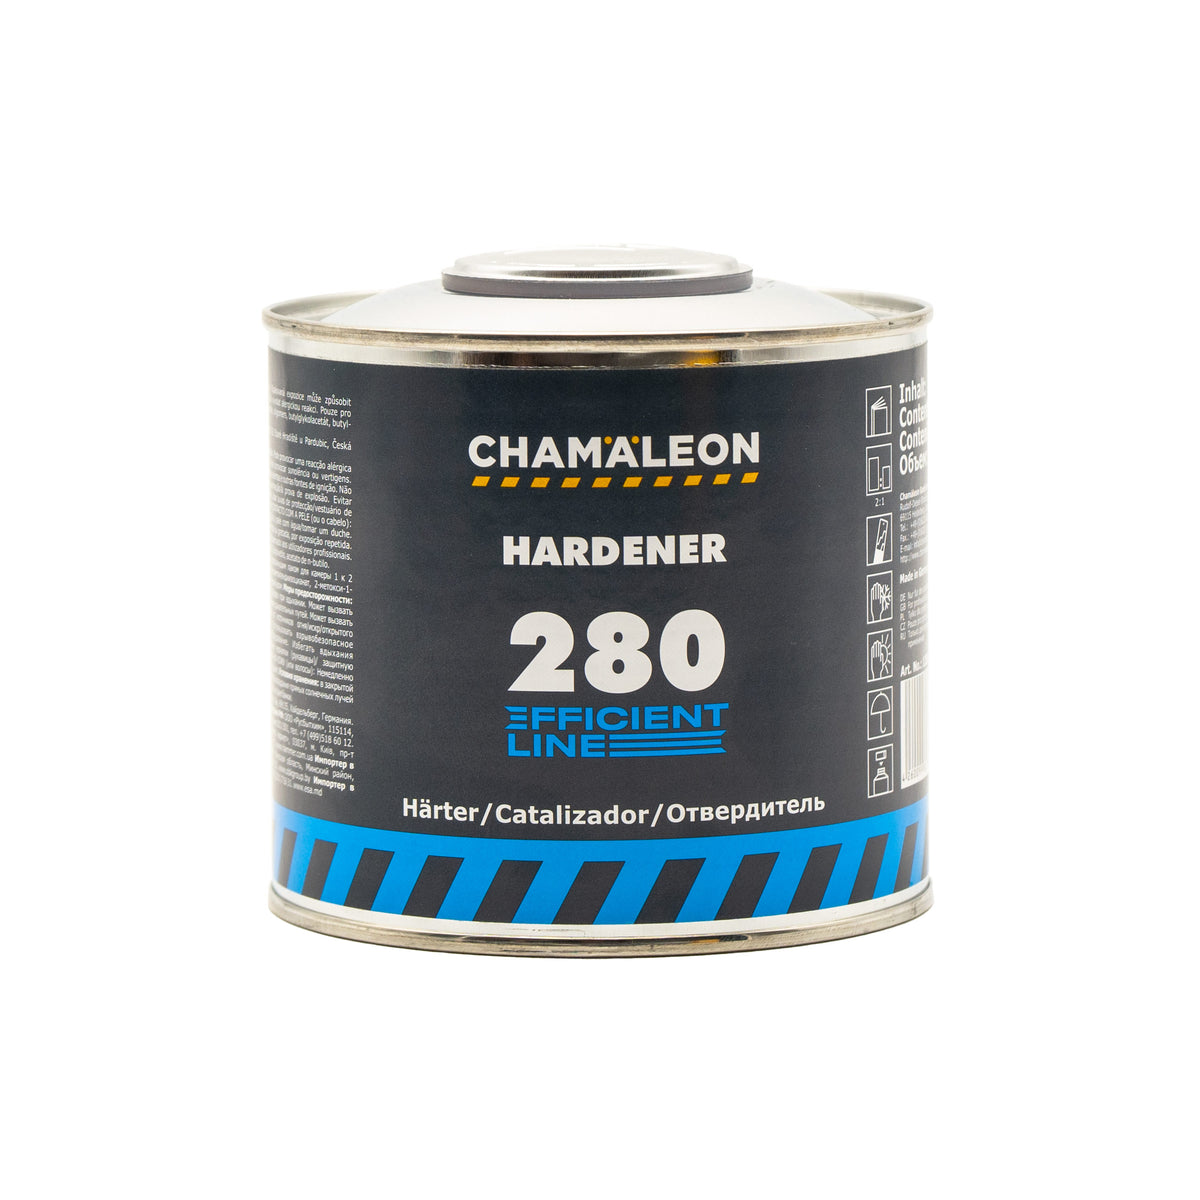 CHAMALEON HS Hardener 280 for Clear Coat 180